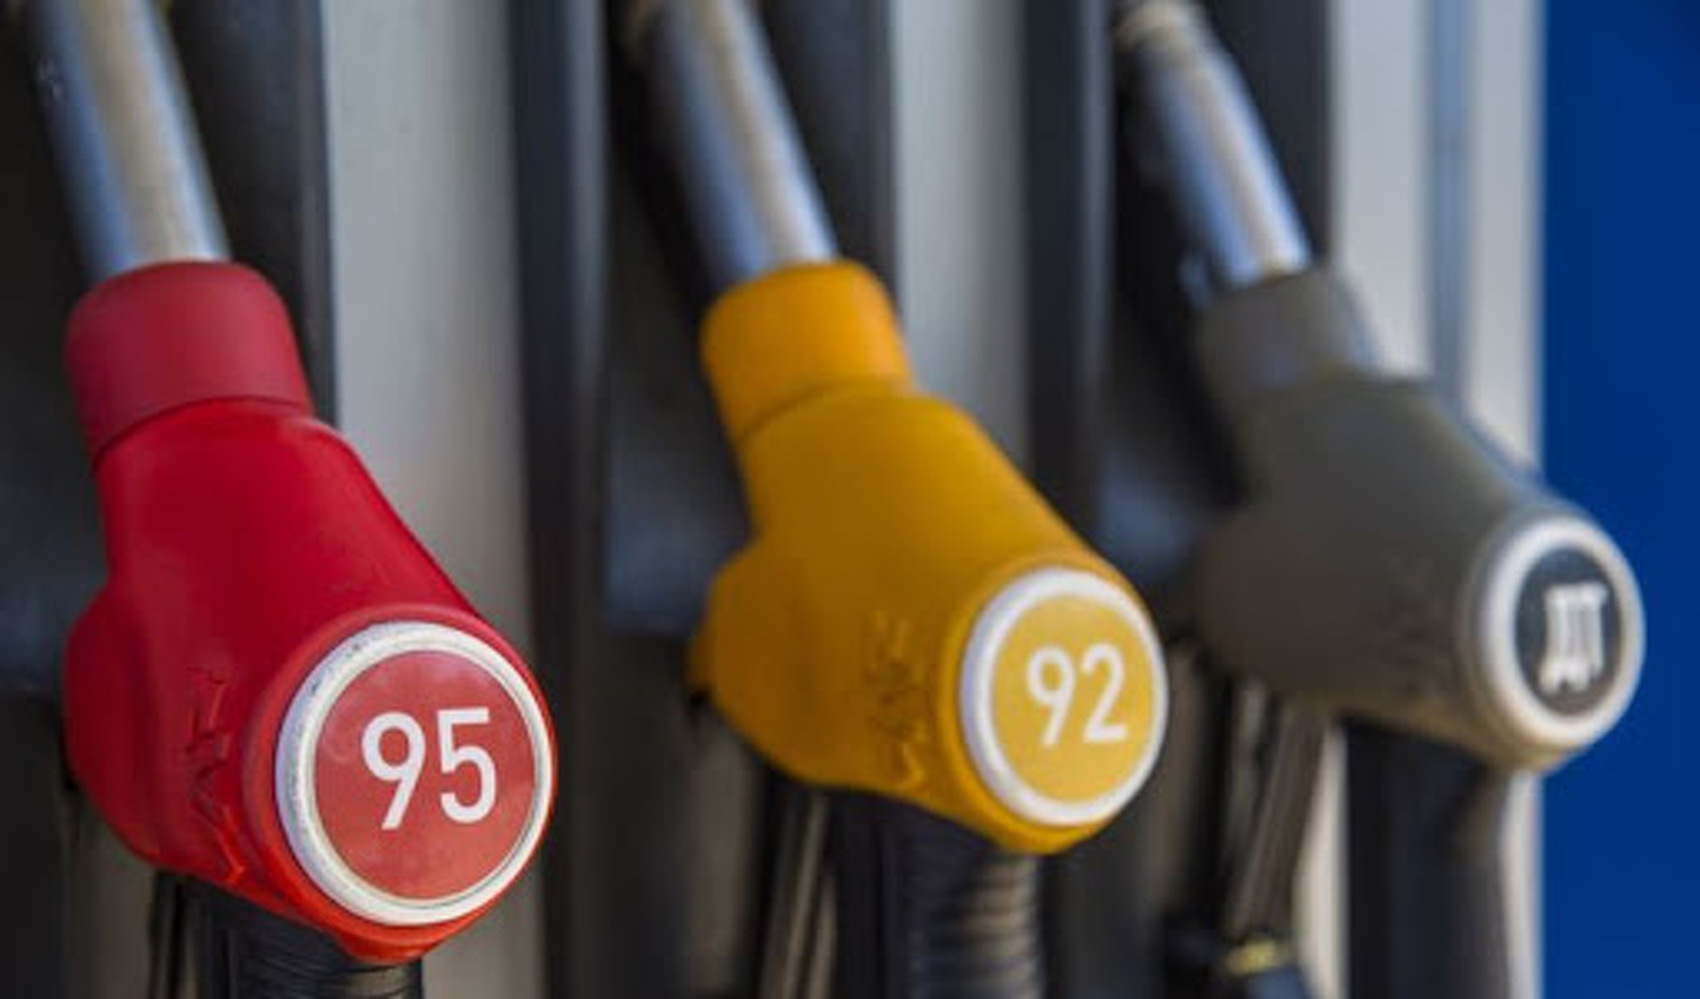 Сколько стоит литр бензина в Кыргызстане? — Today.kg